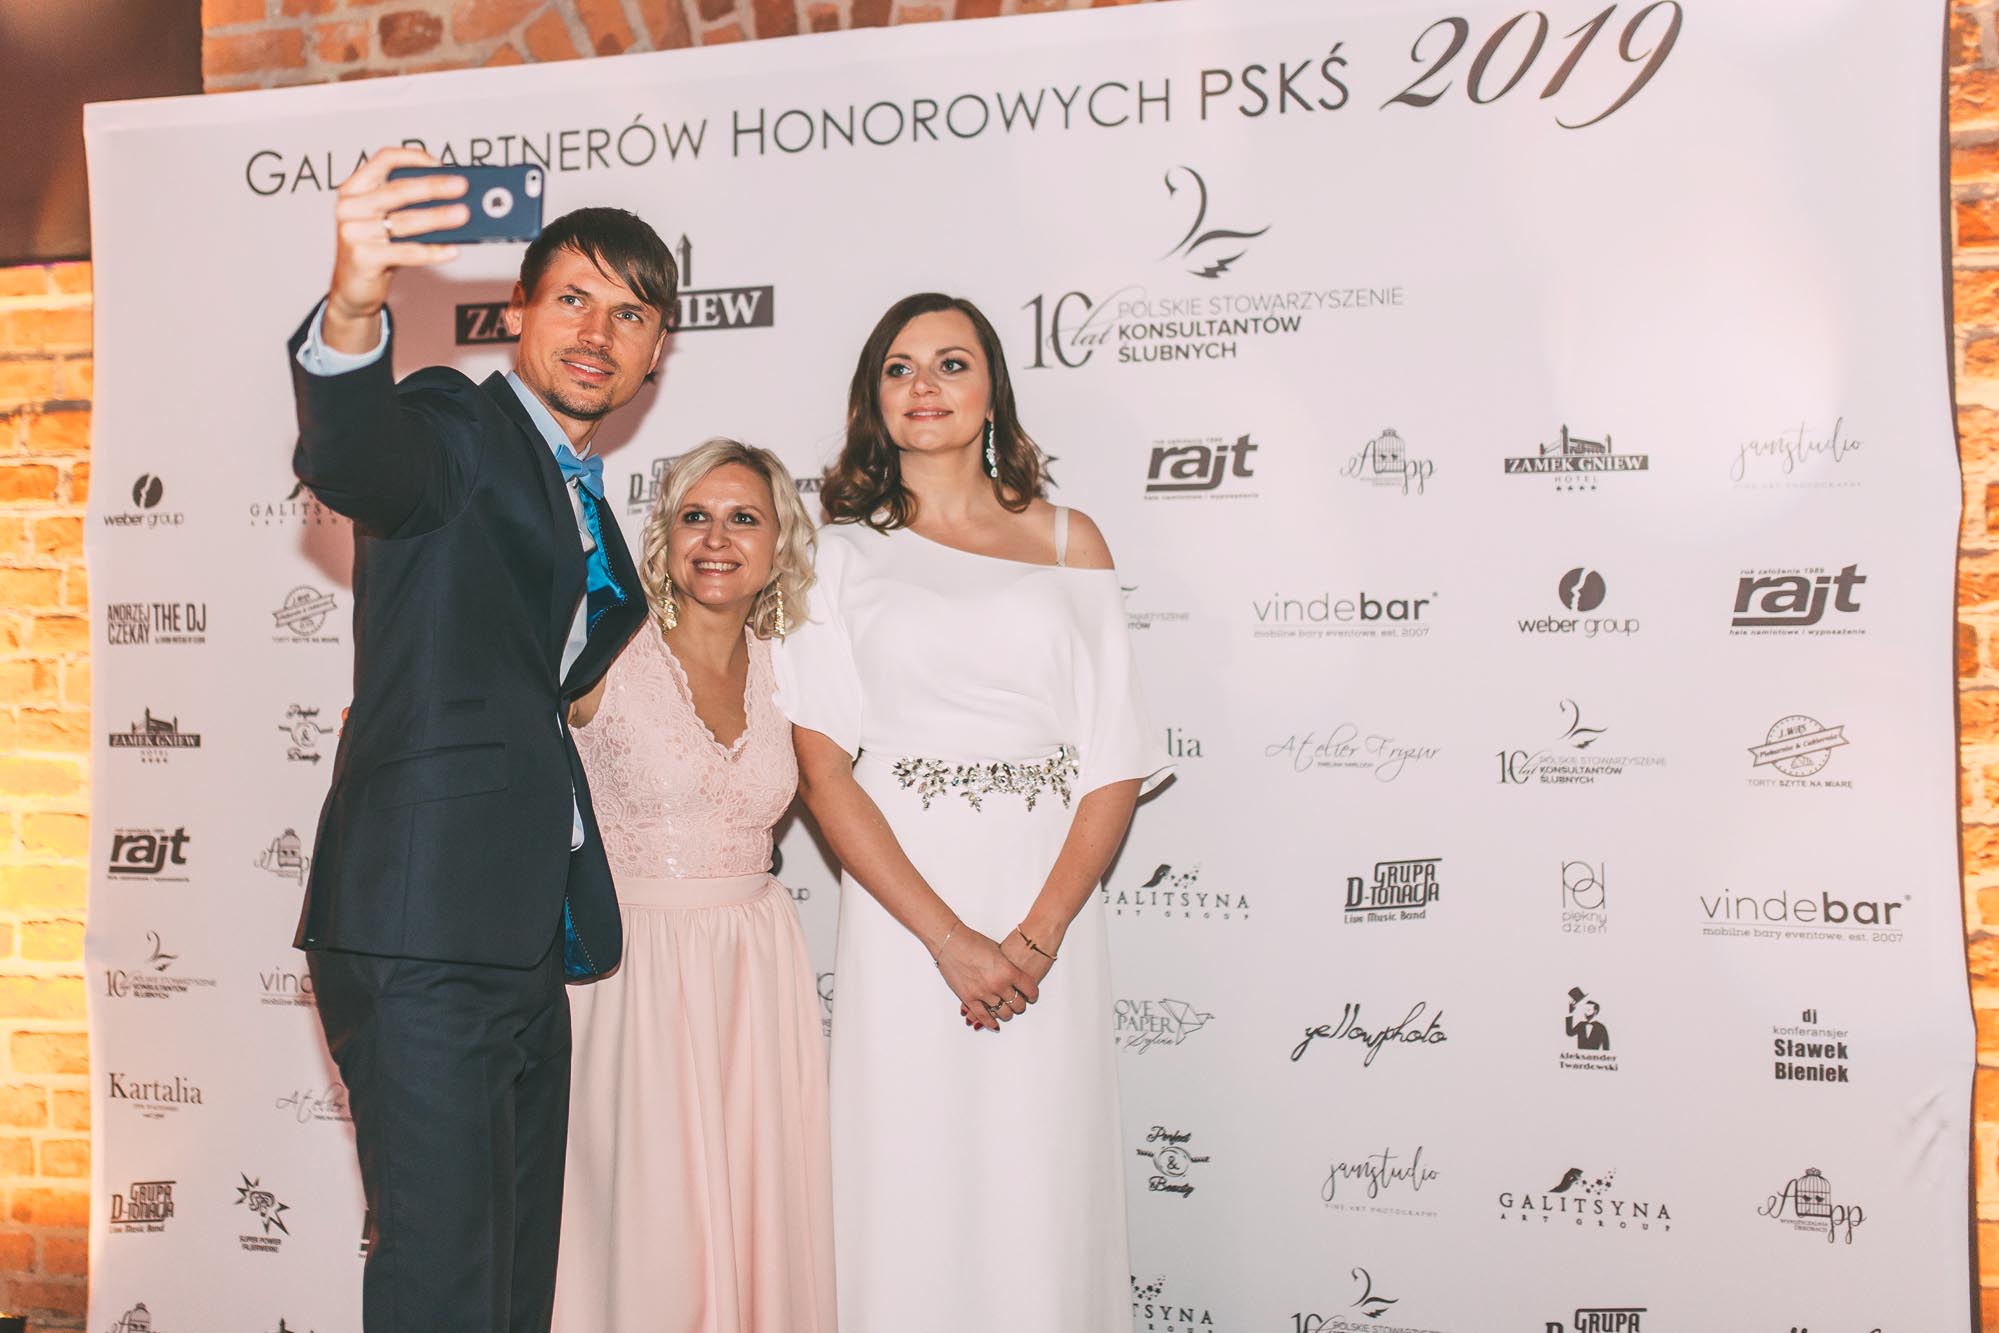 gala partnera honorowego PSKŚ, Polskie Stowarzyszenie Konsultantów Ślubnych, Gala w Gniewie, wedding planner Polska